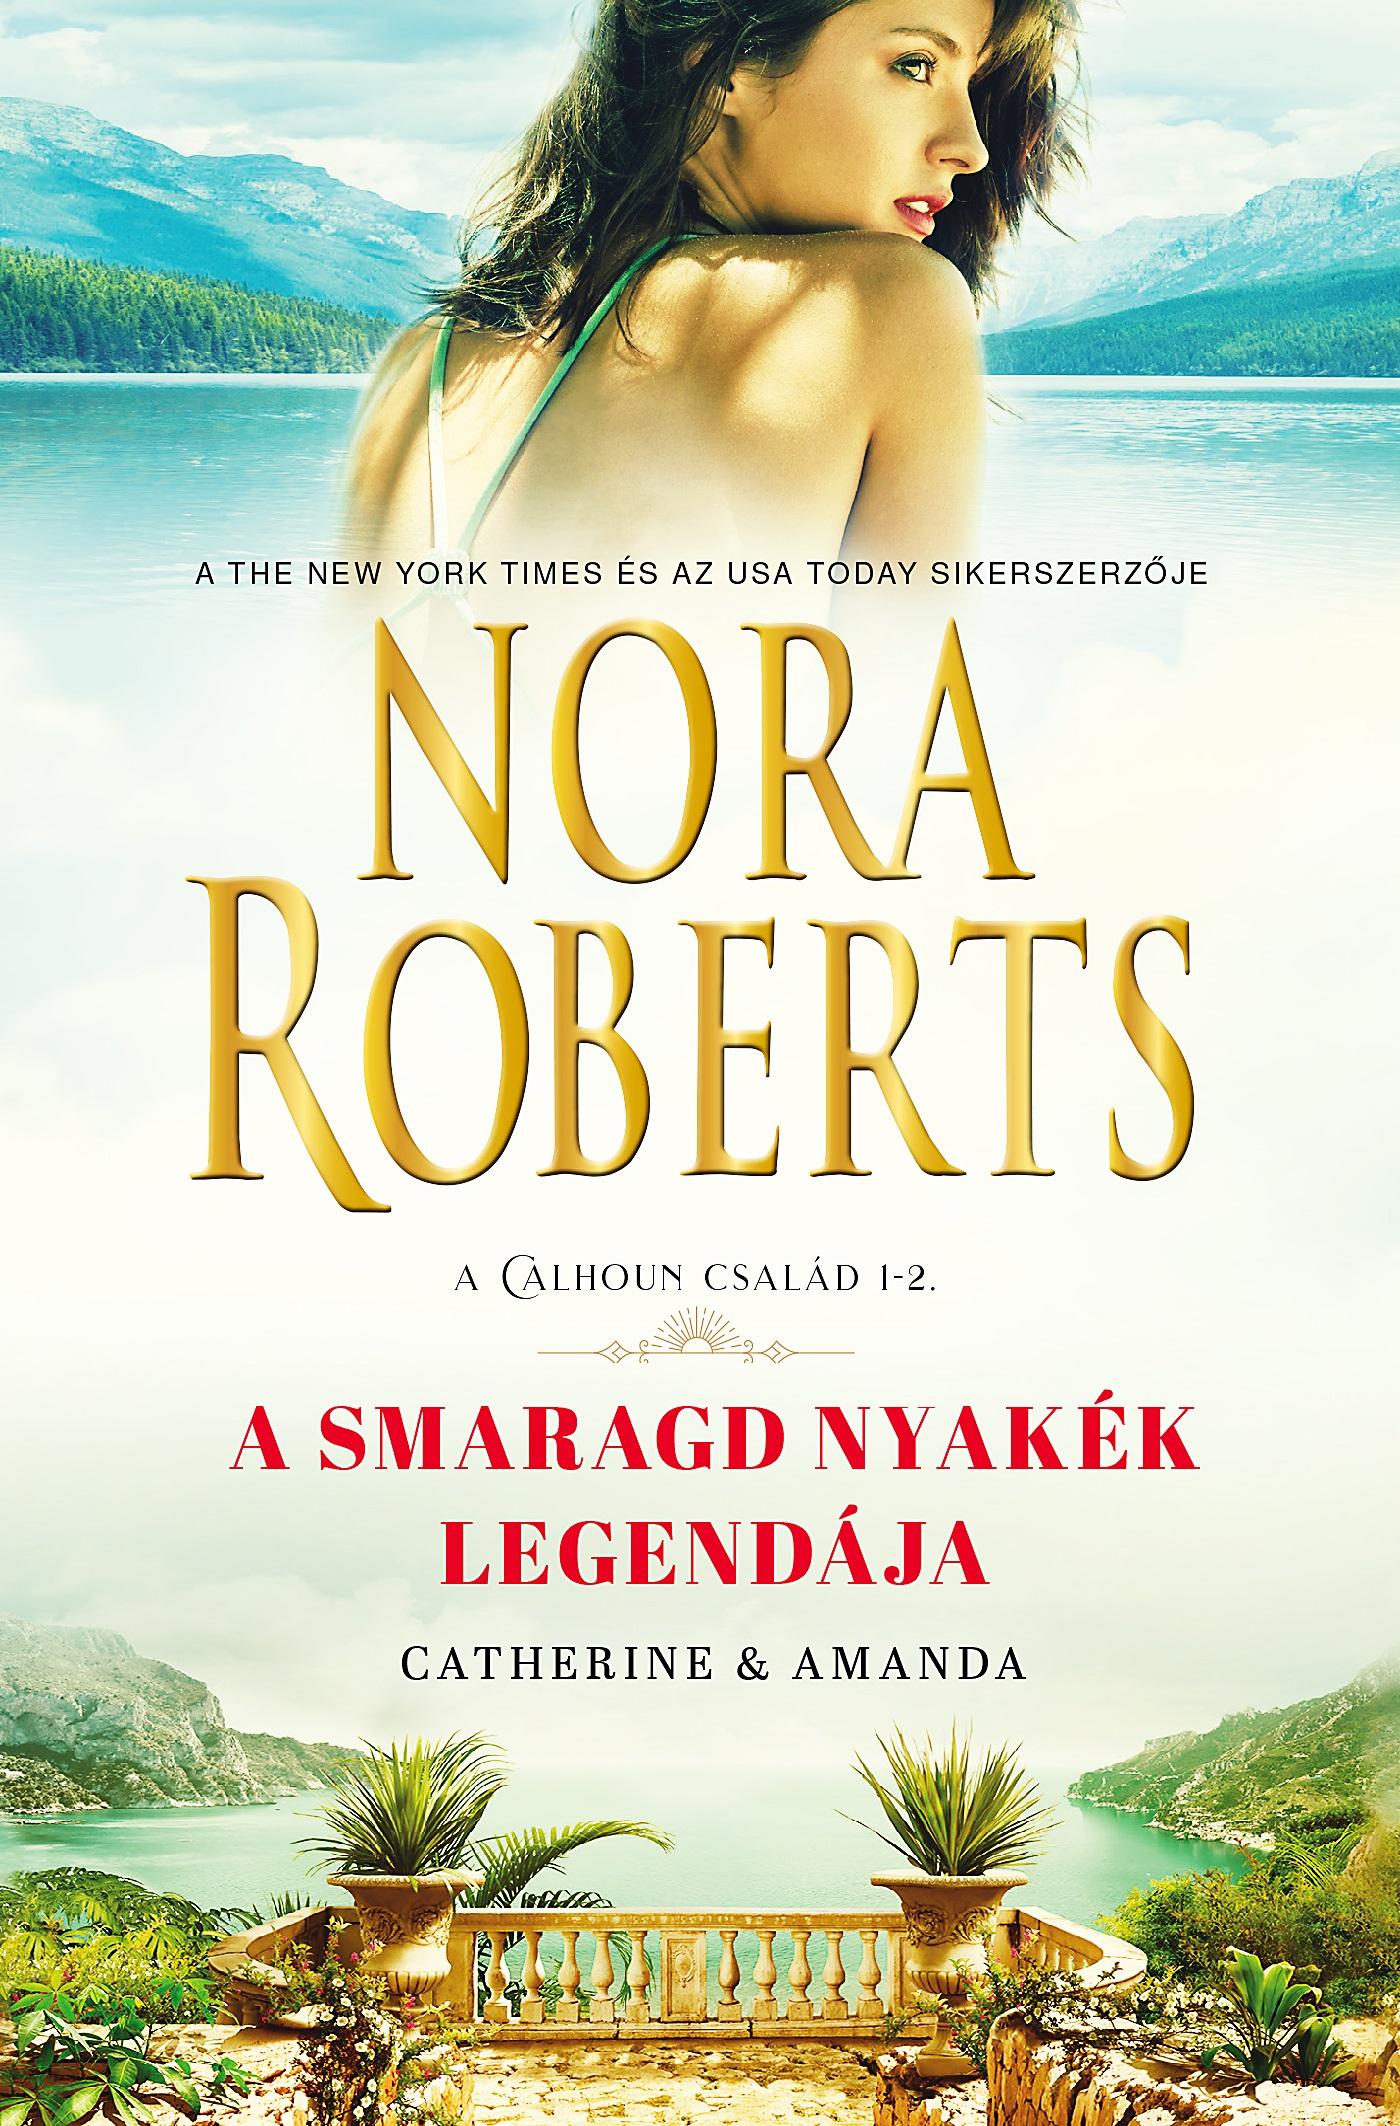 Nora Roberts - A smaragd nyakék legendája